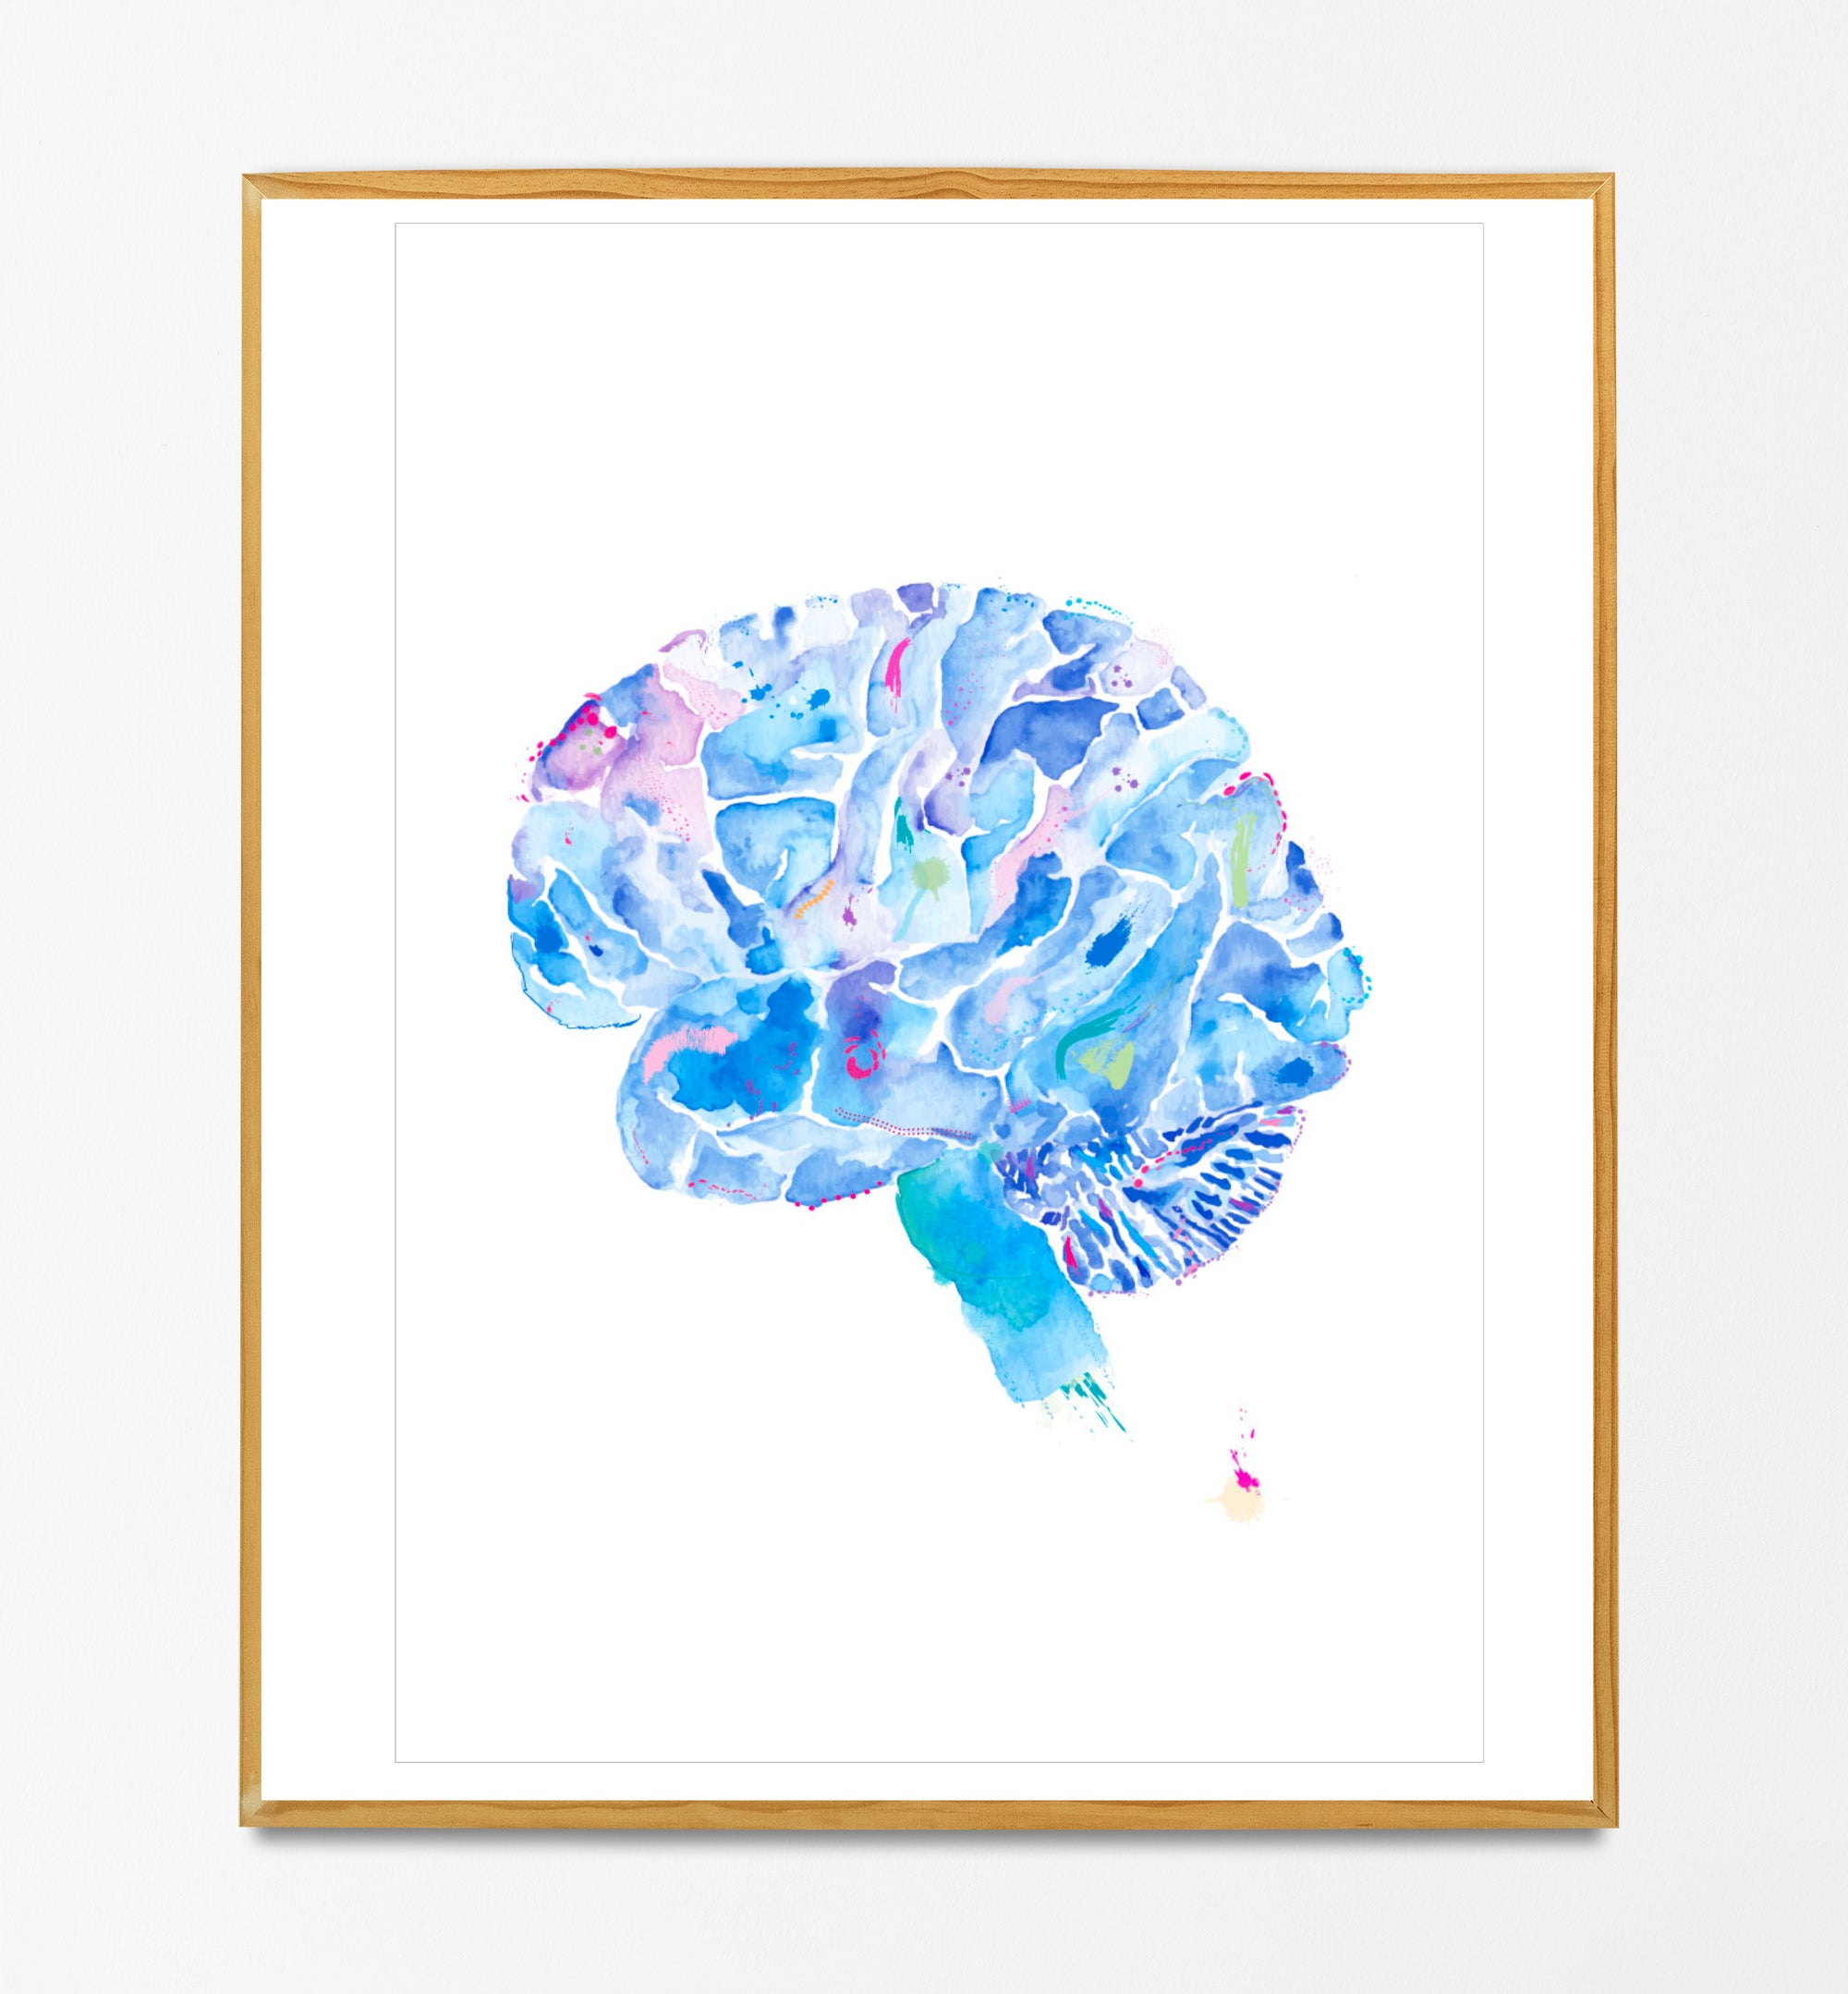 Human Brain Anatomy Art Print, Neurology Office Wall Art, Neurologist Gift